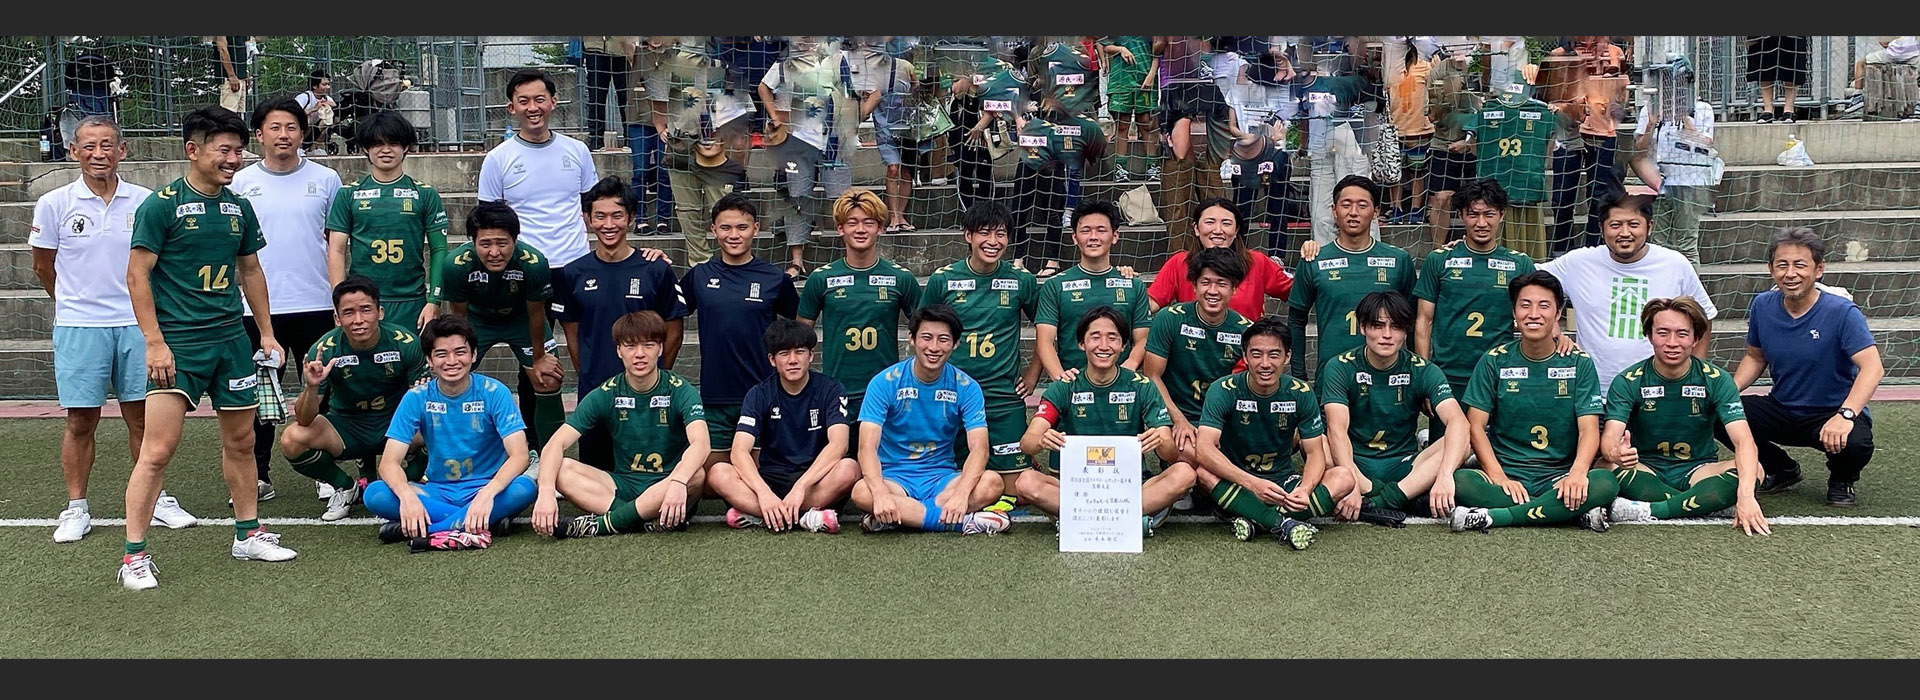 京都フットボール連盟 official site